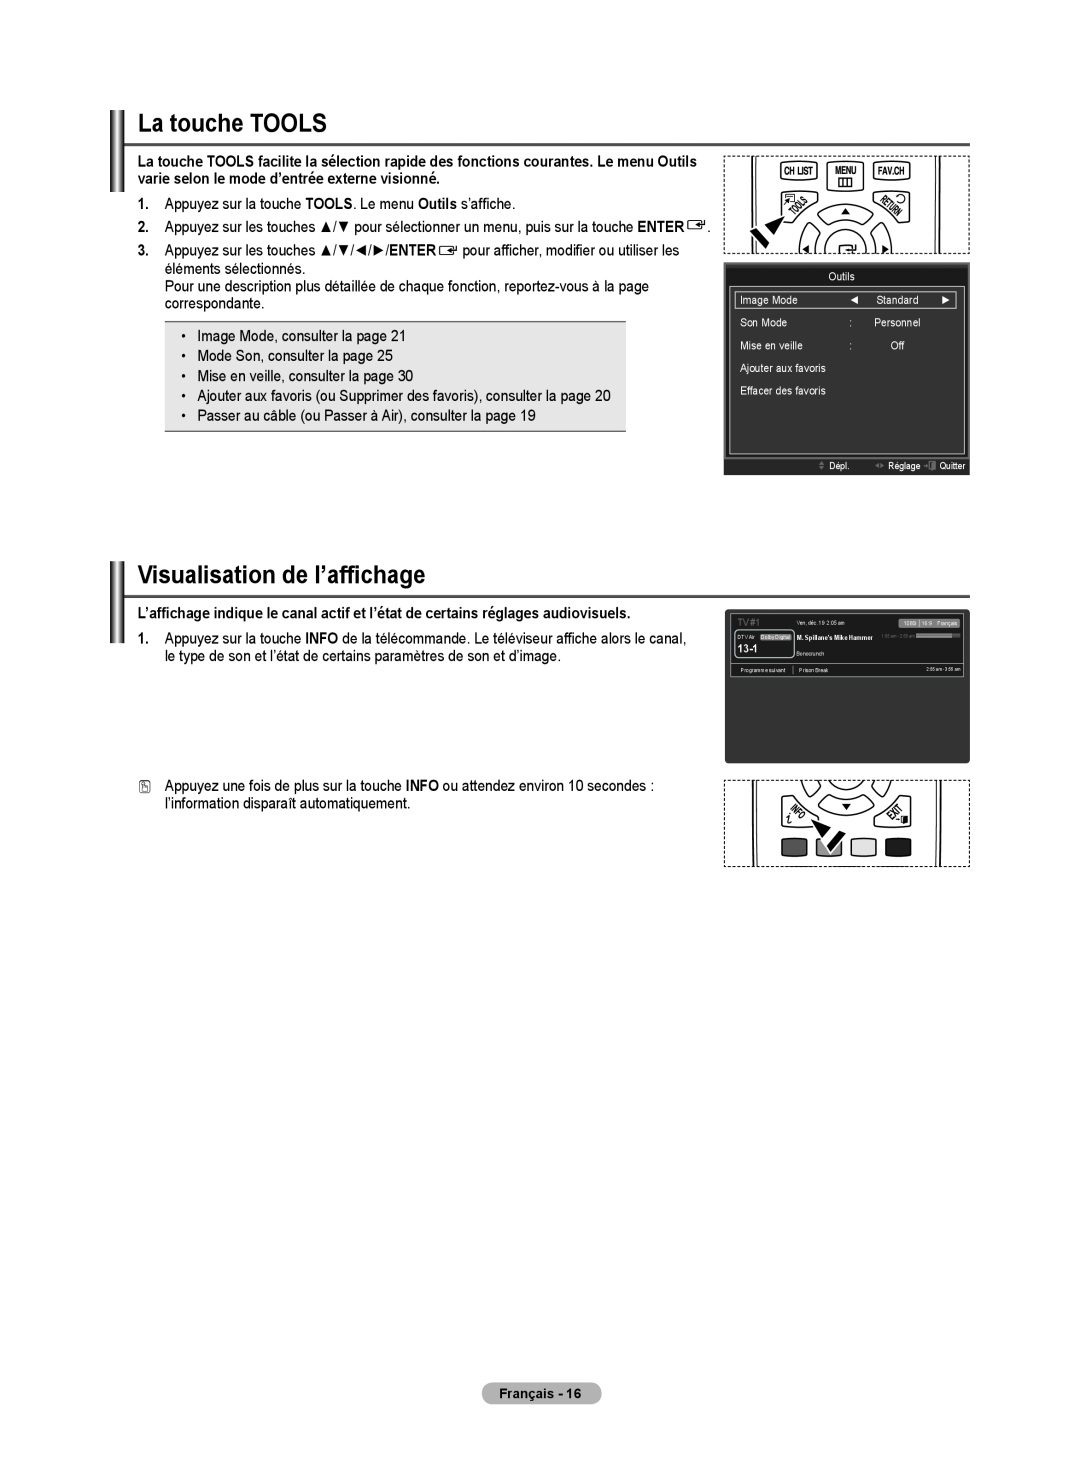 Samsung BN68-02426A-00 user manual La touche TOOLS, Visualisation de l’affichage 